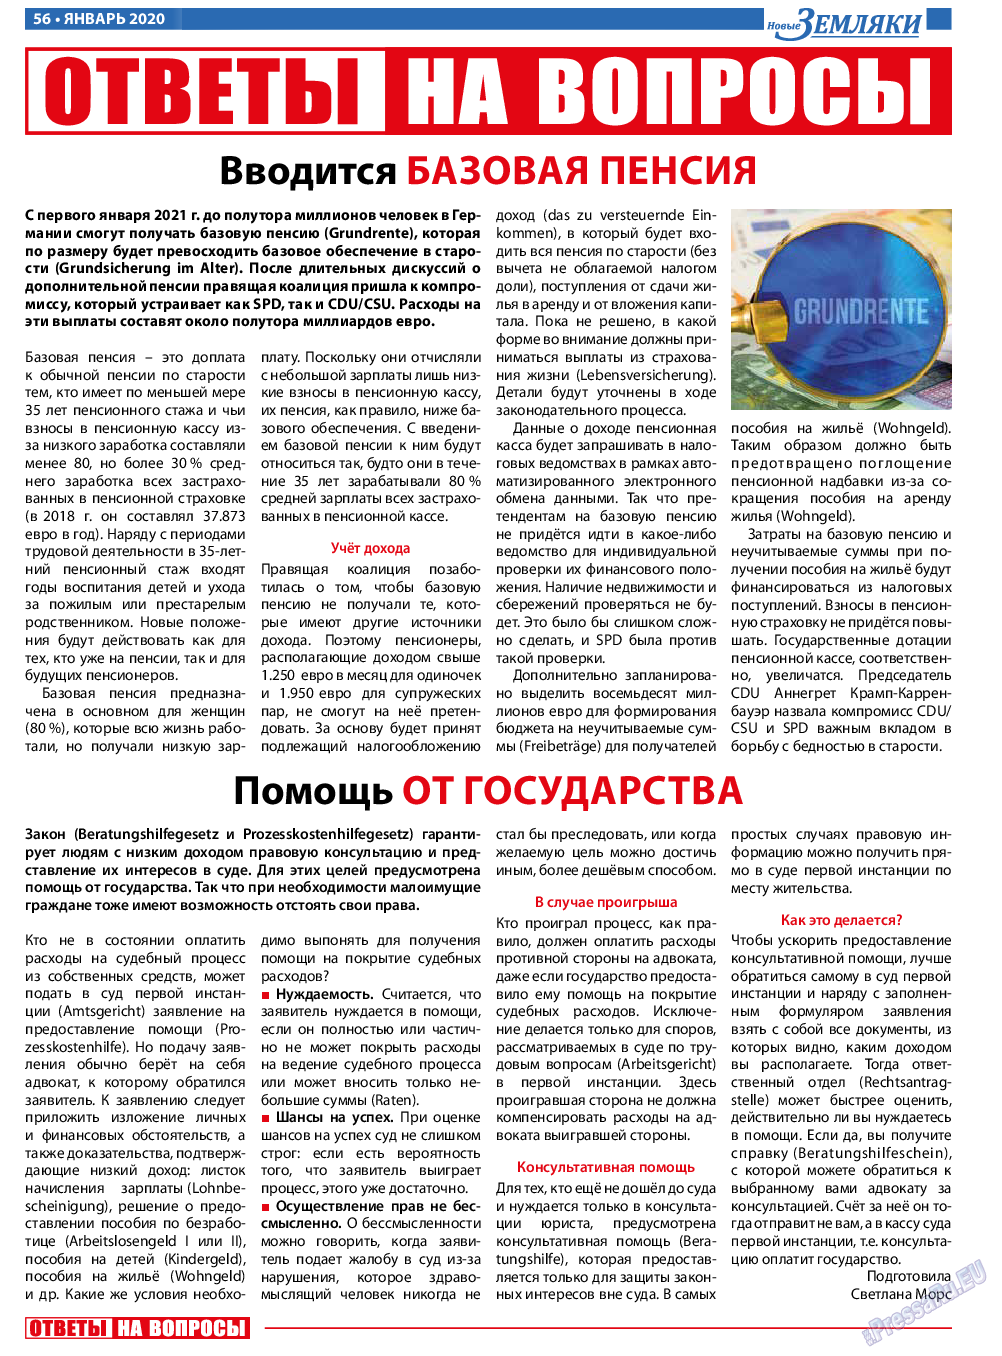 Новые Земляки, газета. 2020 №1 стр.56